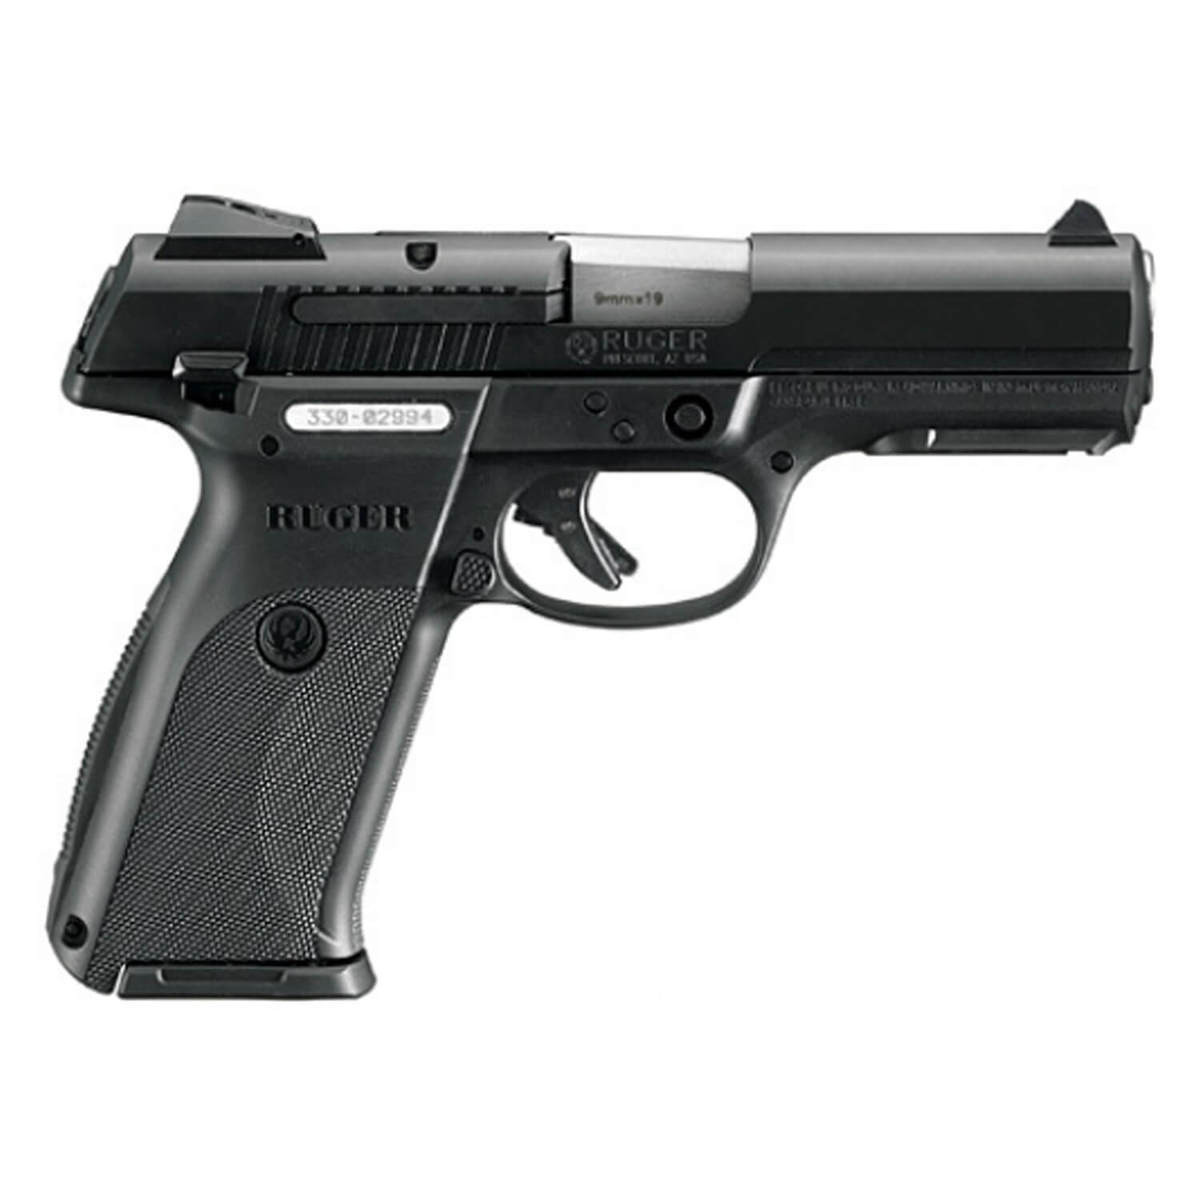 Ruger Sr9 9mm Luger 414in Black Pistol 101 Rounds Black